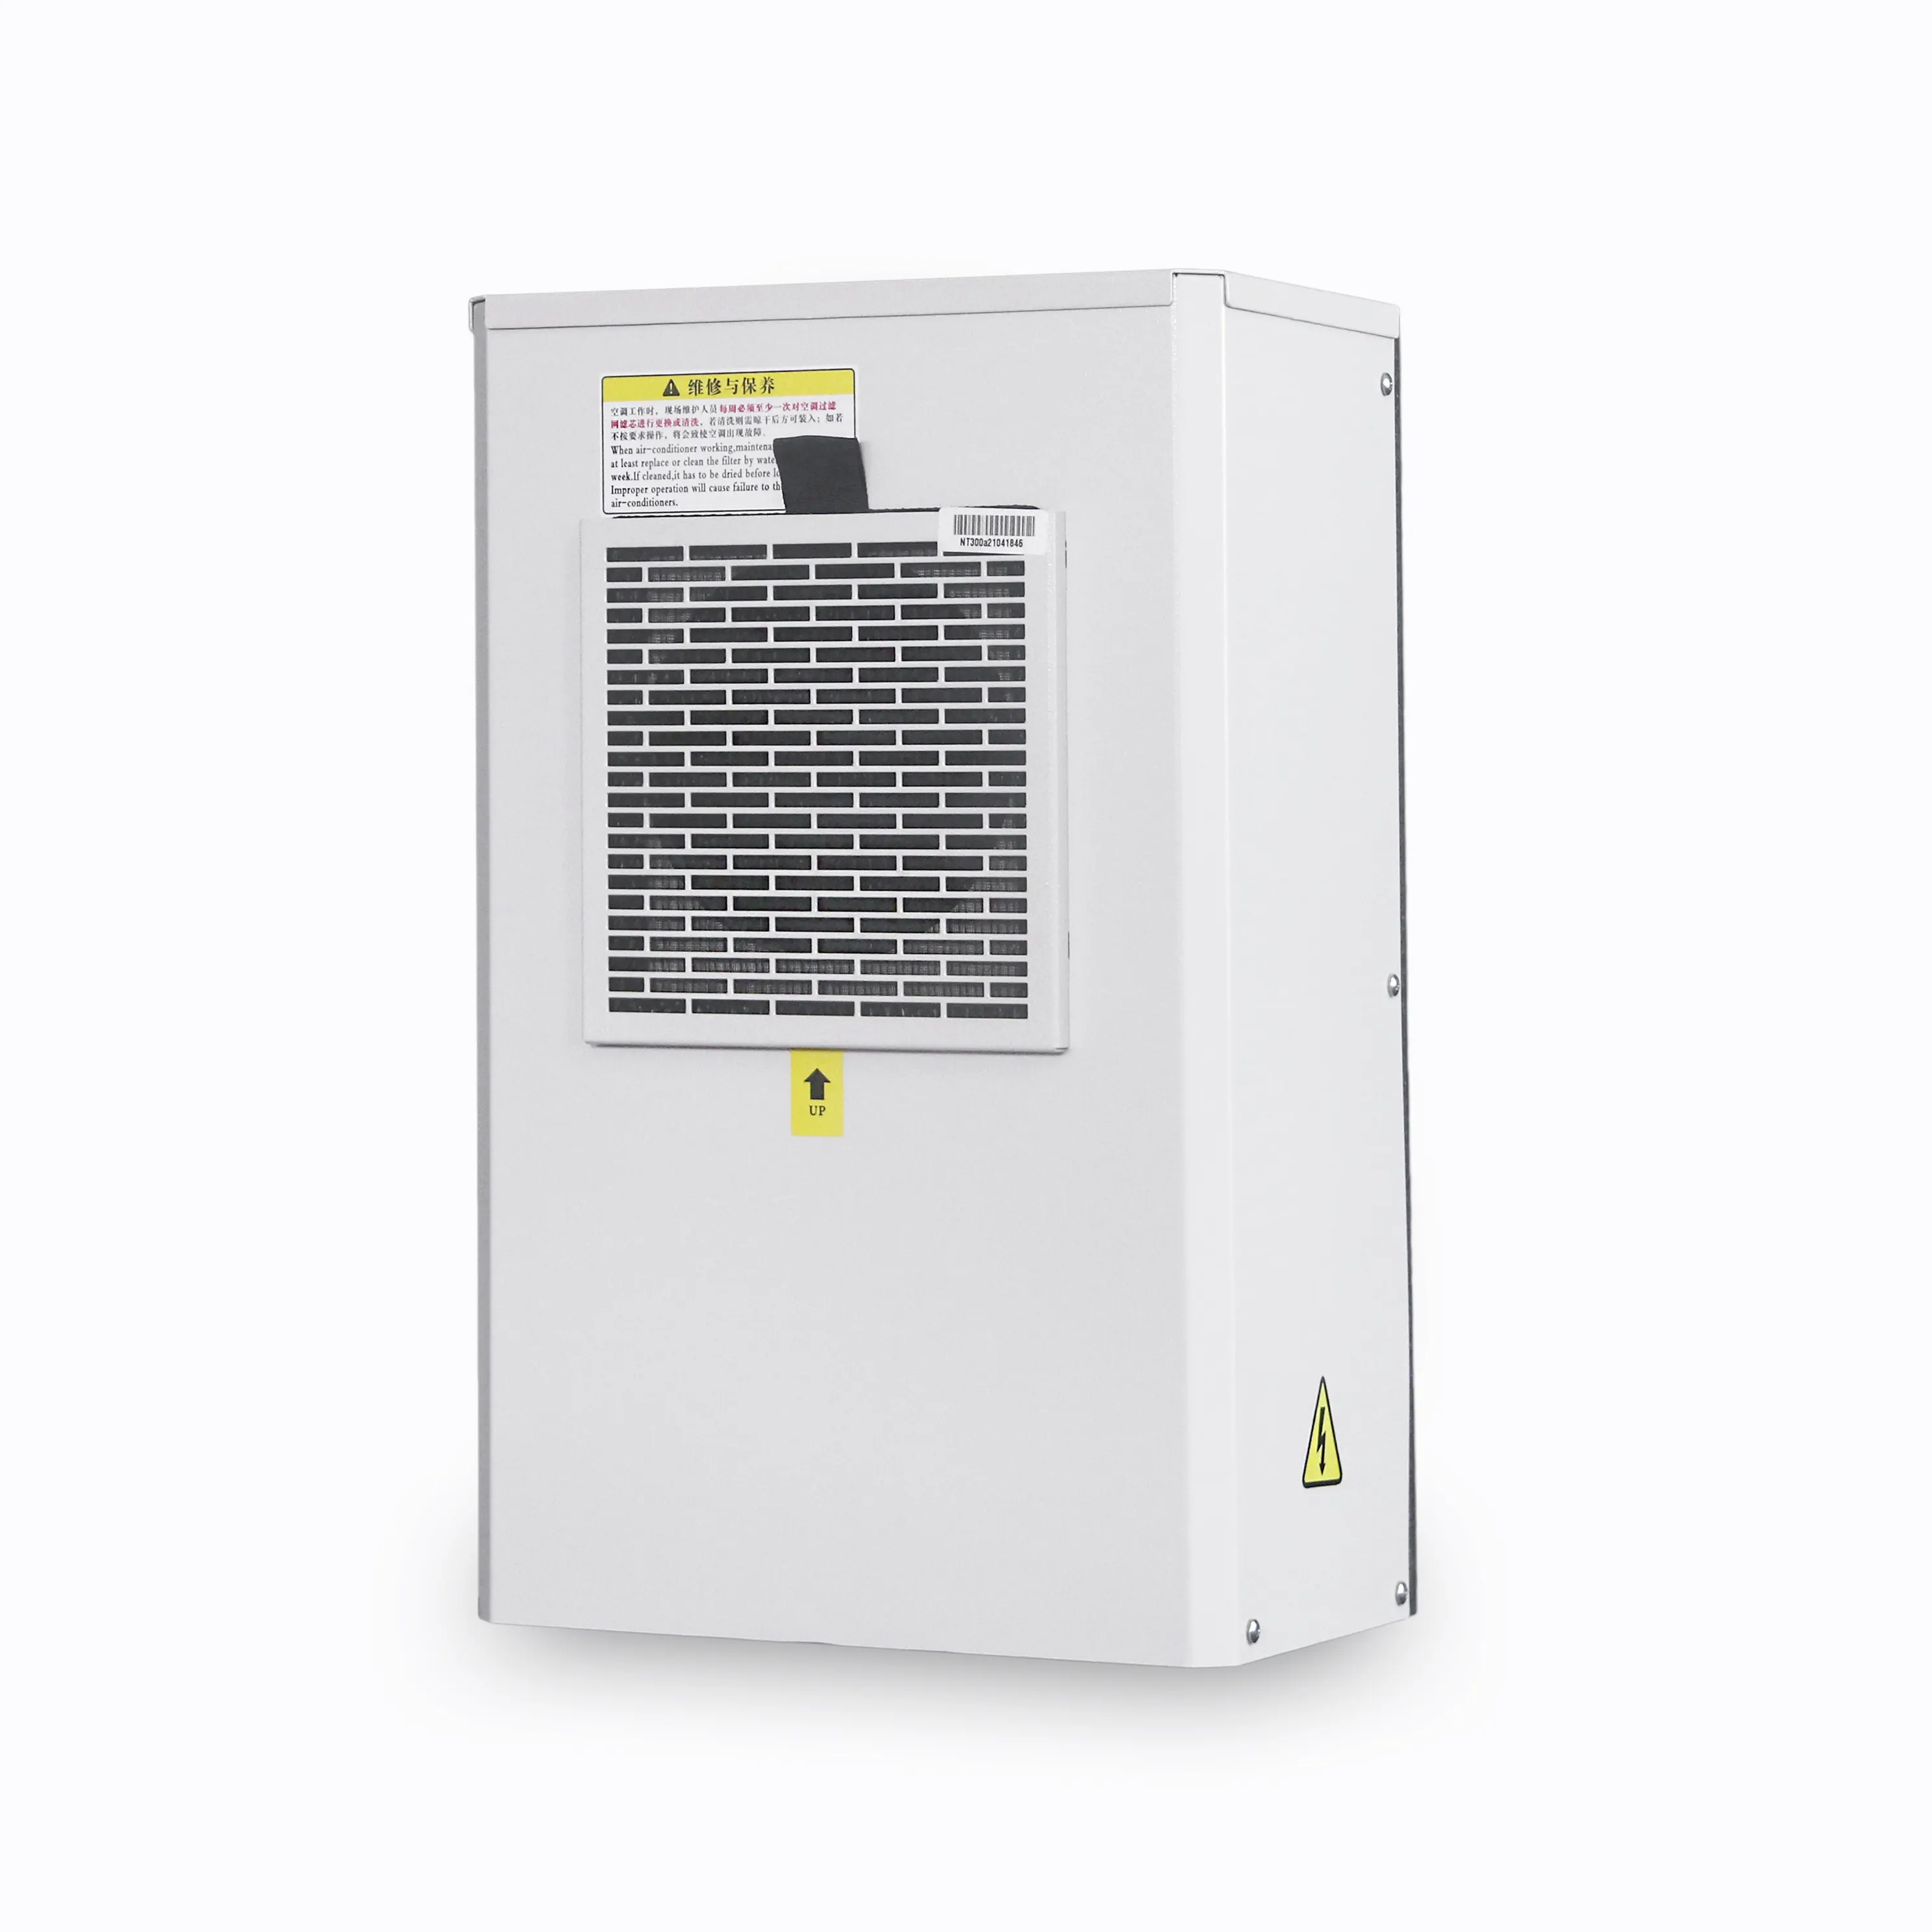 Compressore rotativo 300W R134a condizionatore d'aria tipo piccolo armadio per armadio elettrico